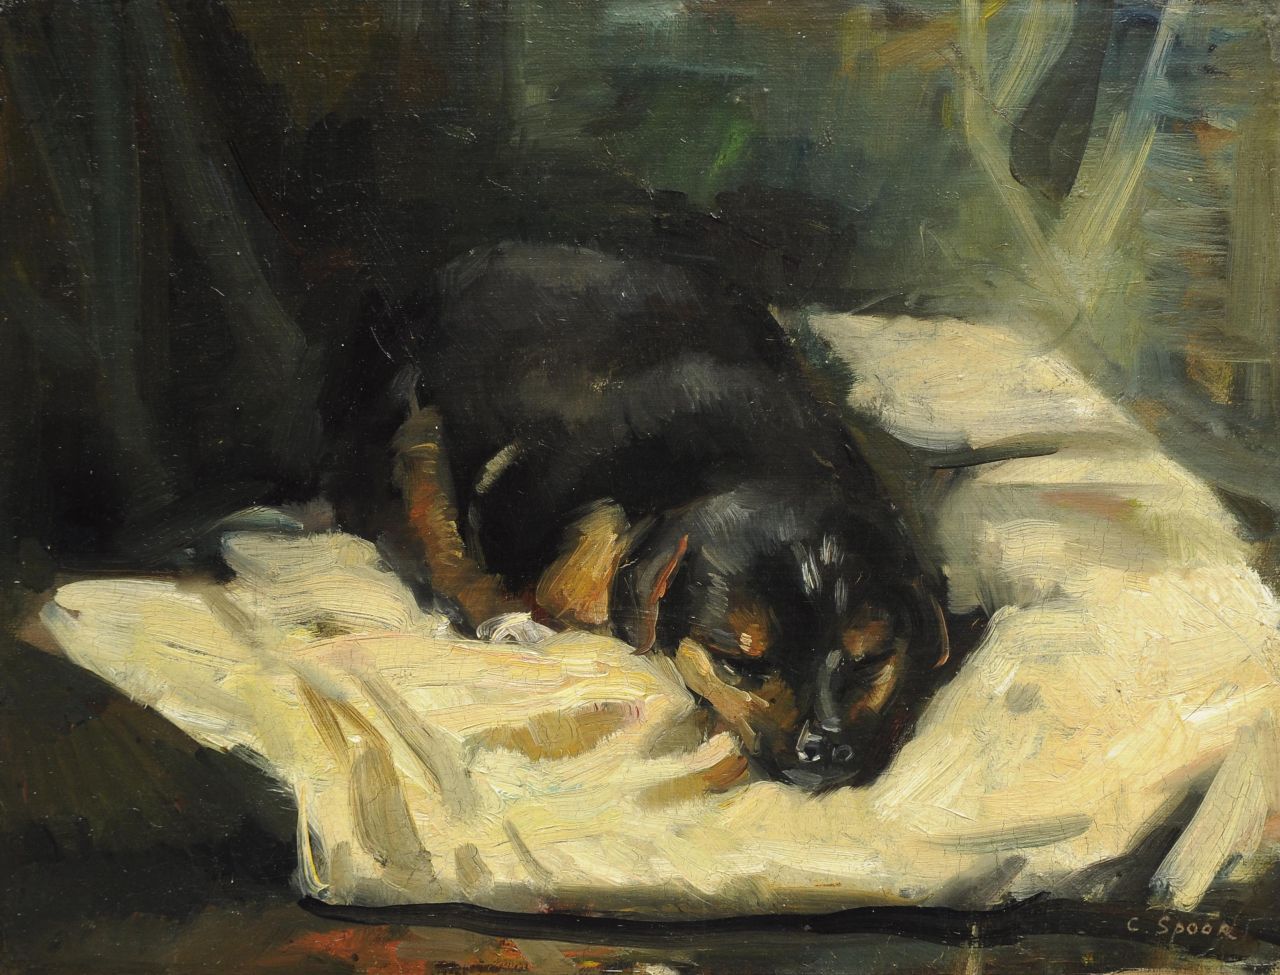 Spoor C.R.H.  | 'Cornelis' Rudolf Hendrik  Spoor, Slapende hond, olieverf op doek op board 28,0 x 36,5 cm, gesigneerd rechtsonder